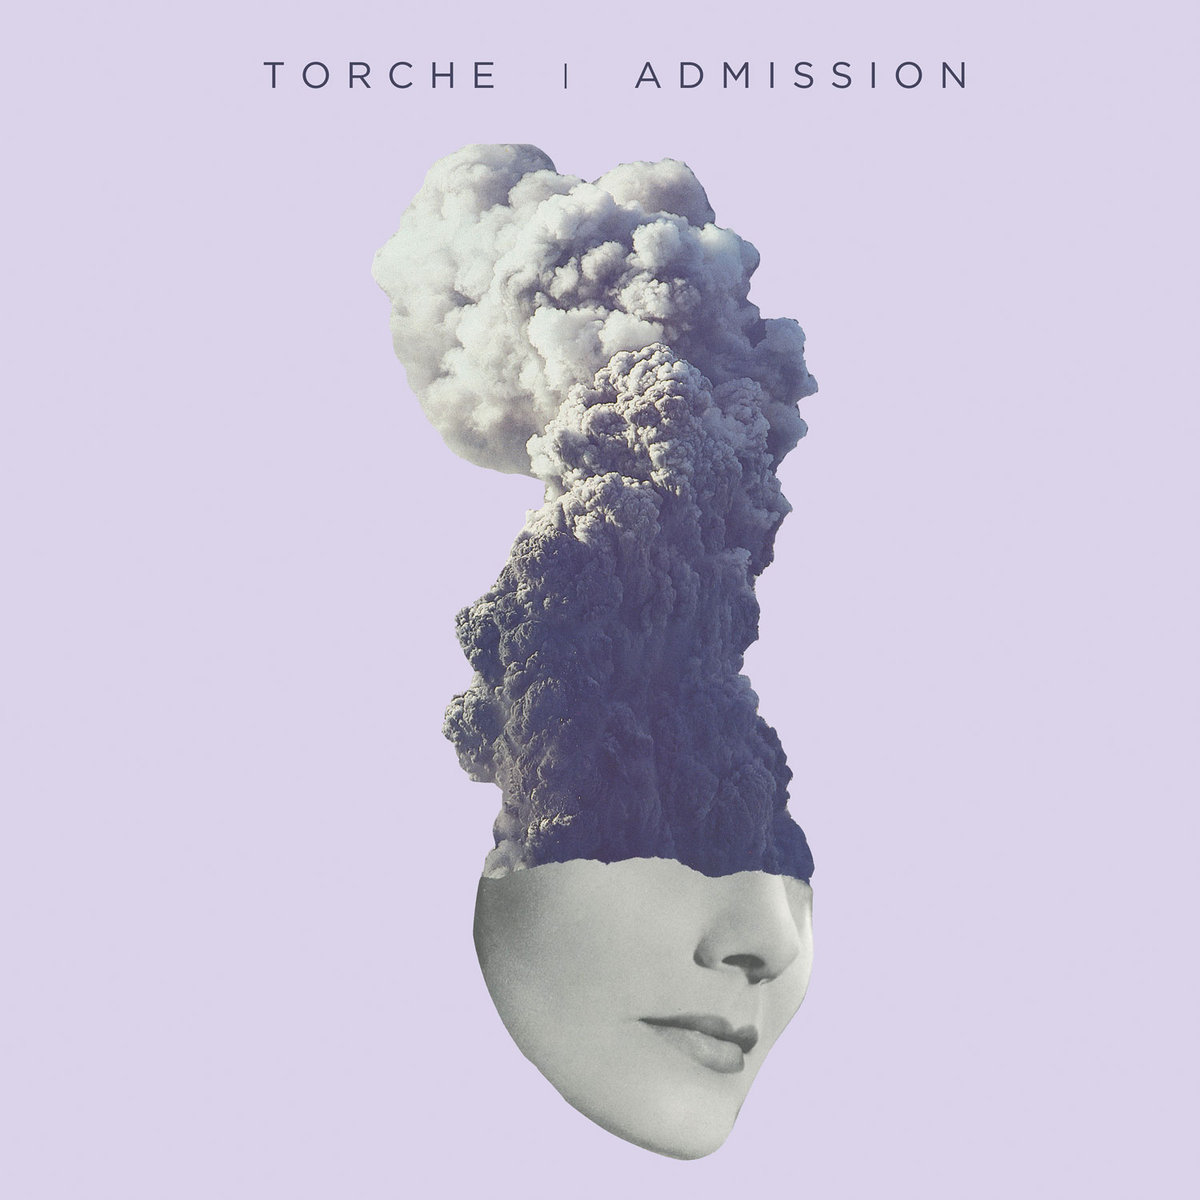 TORCHE dos adelantos de su nuevo album “Admission” en stream